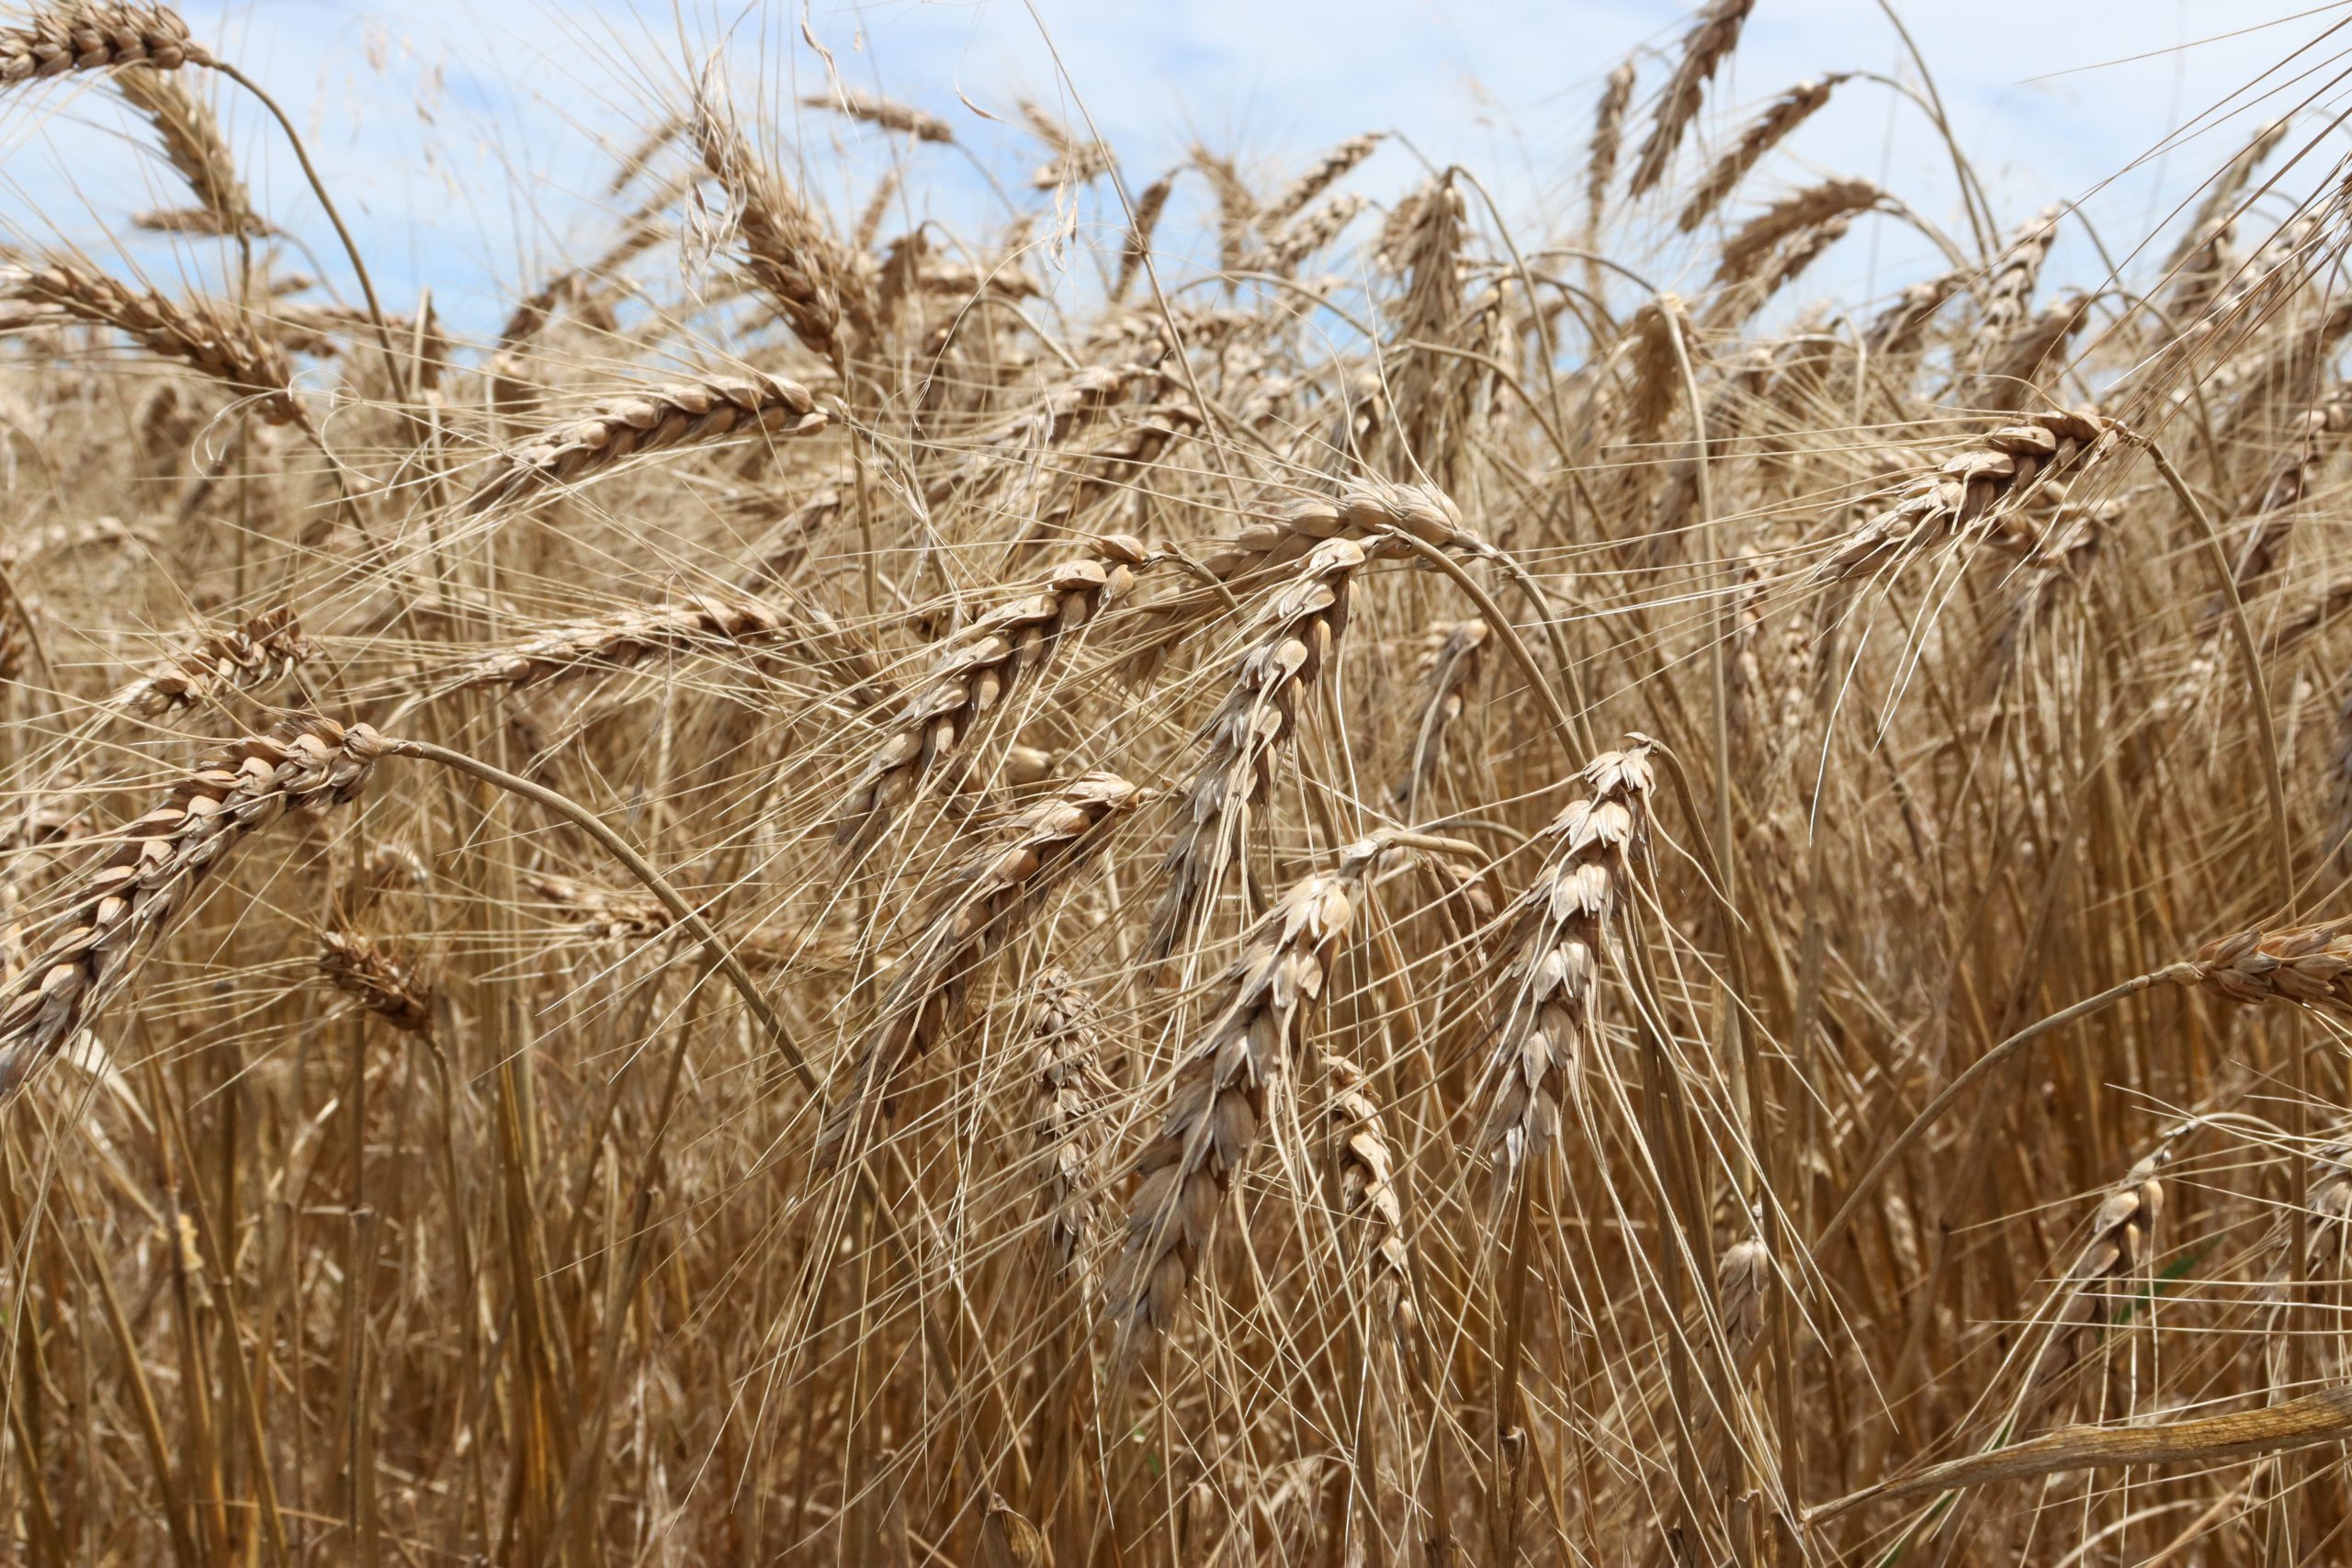 An Oklahoma wheat field. (Photo by Andrea Hanson.)